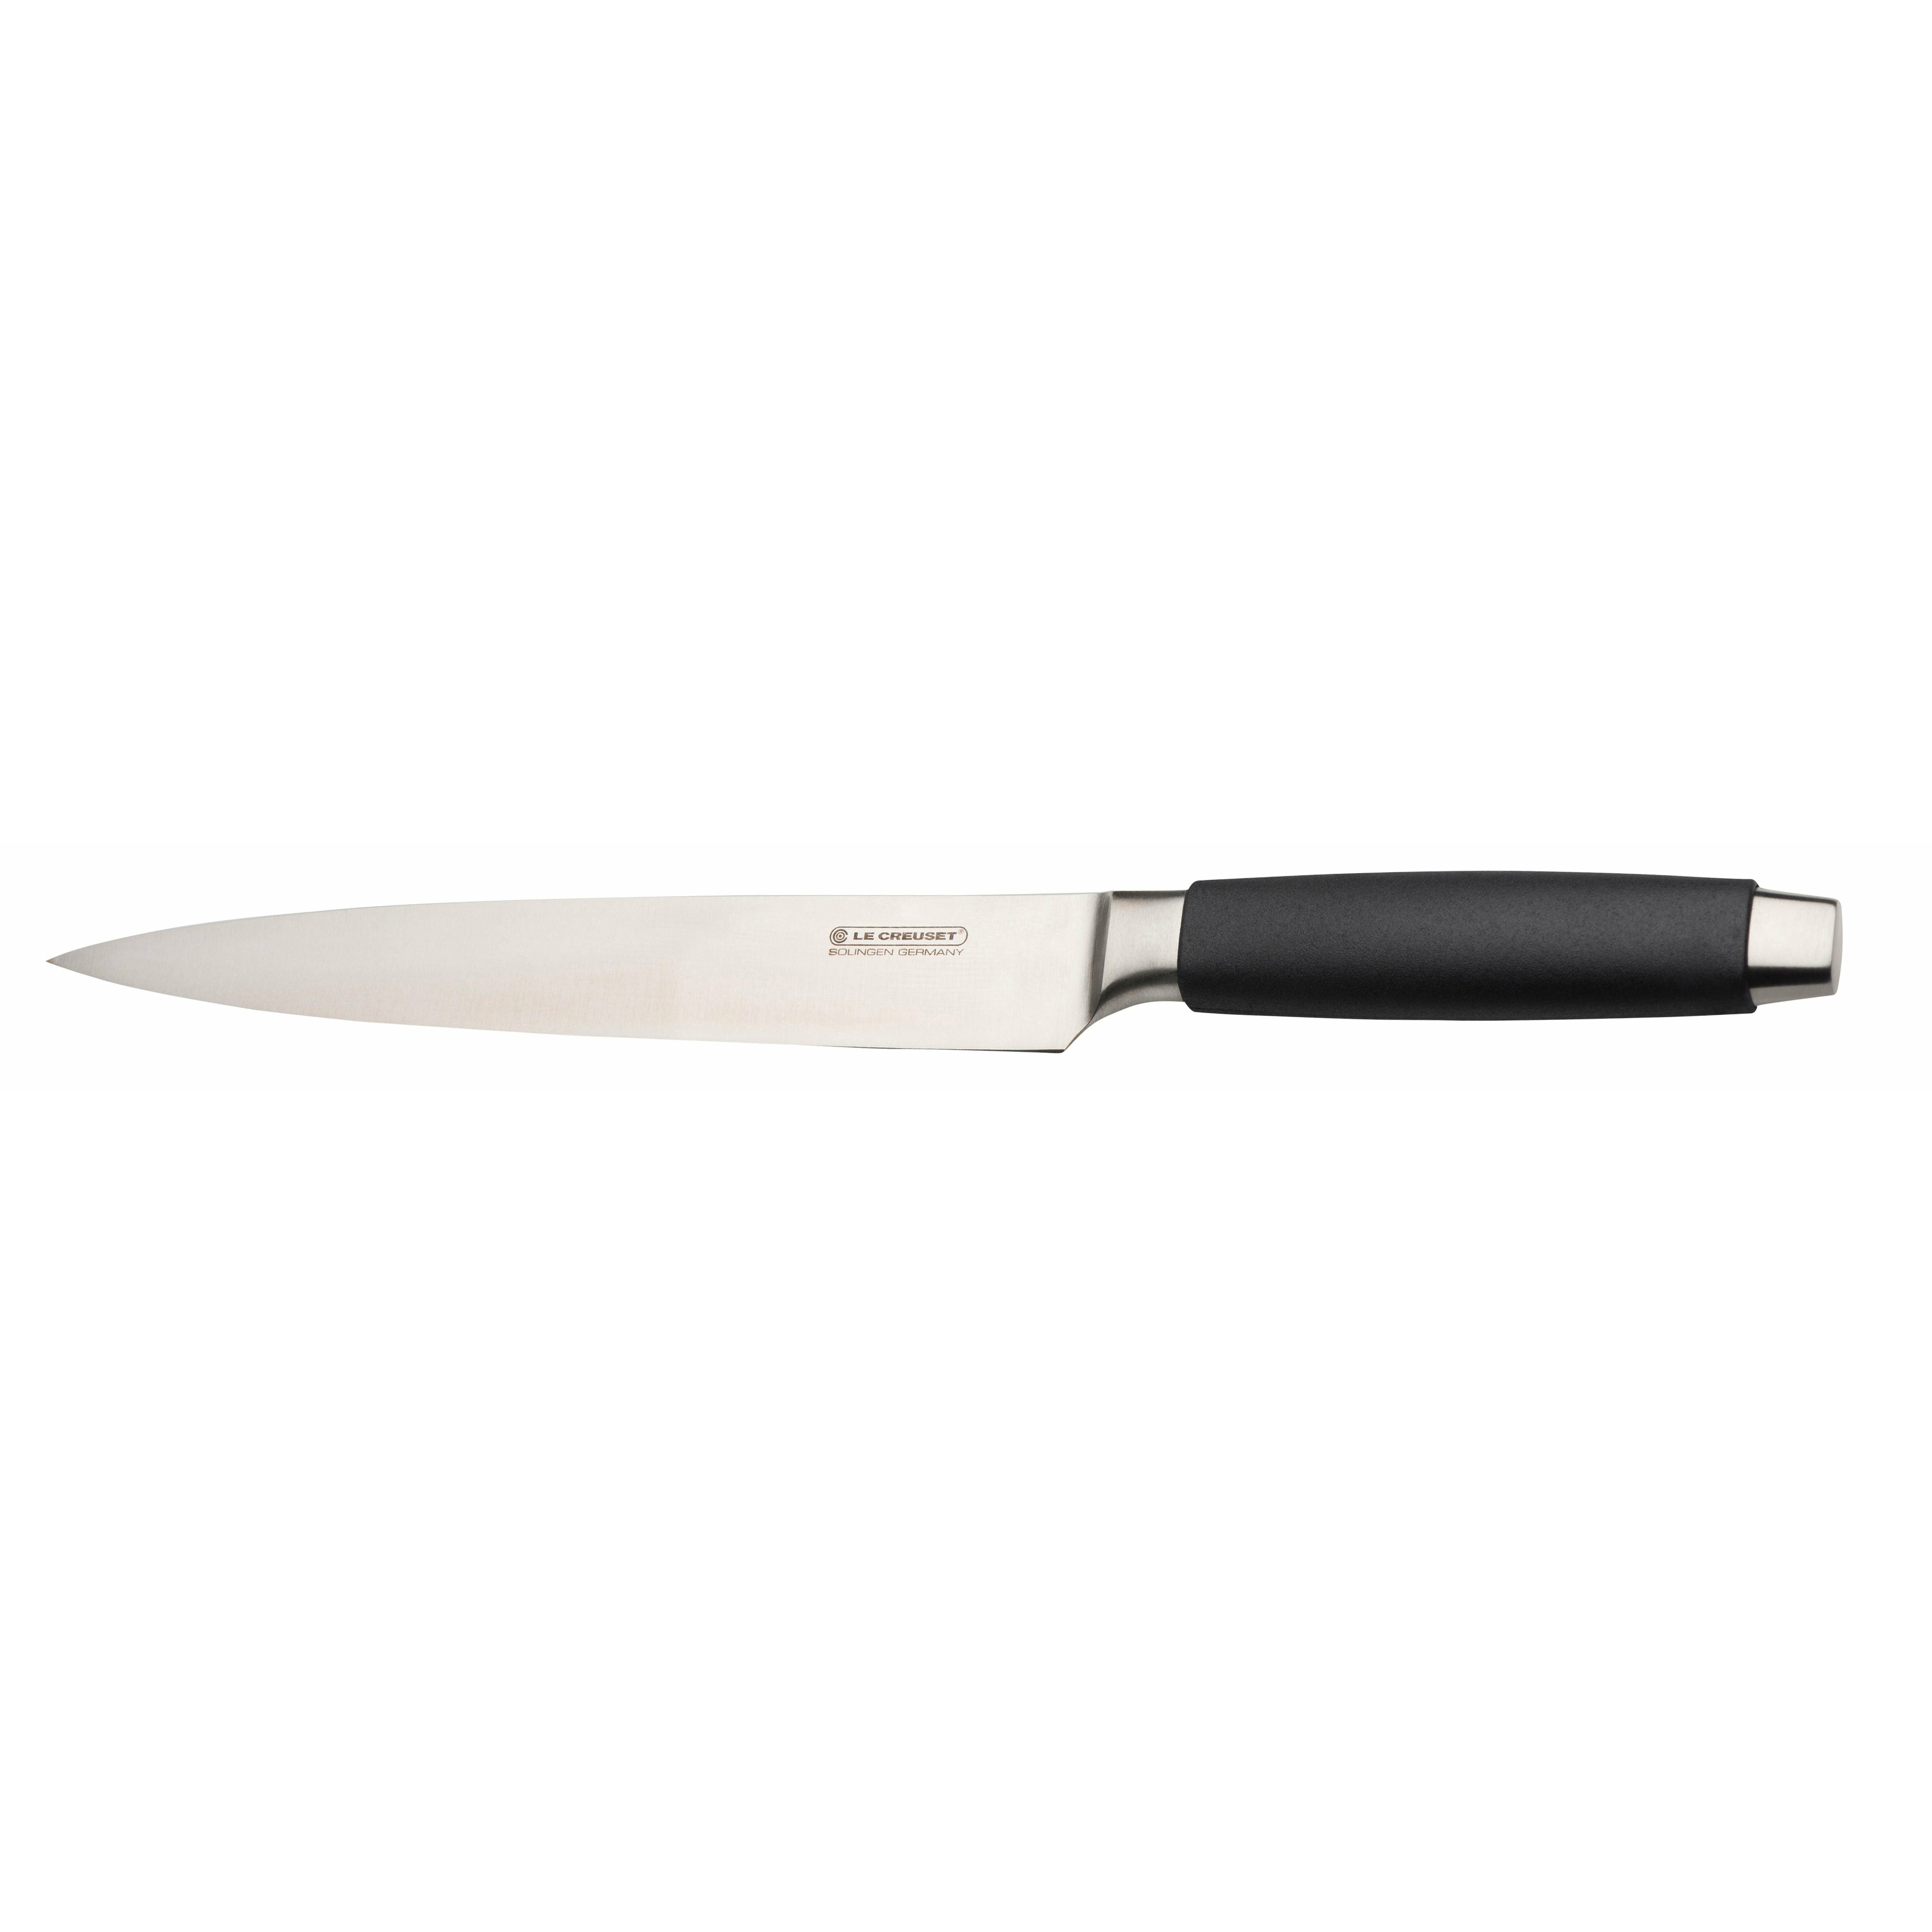 Le Creuset Standard du couteau de jambon avec poignée noire, 20 cm